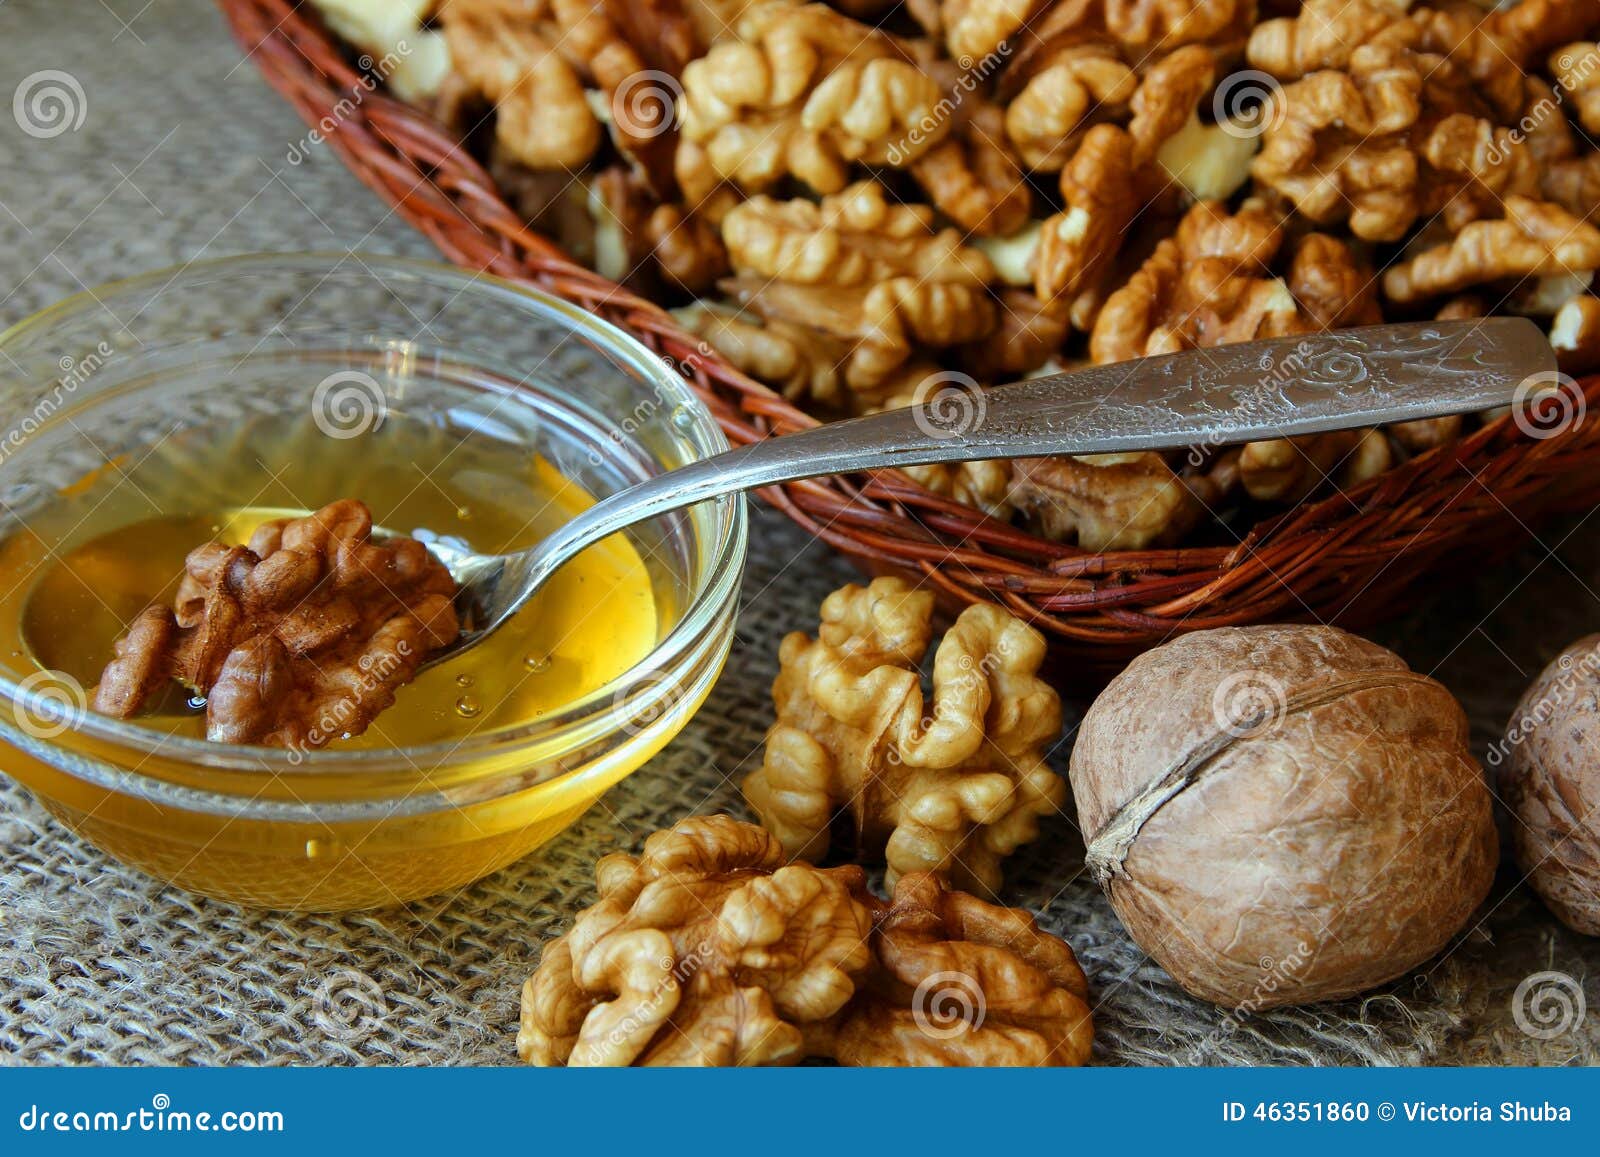 Тыква грецкий орех мед. Мед с орехами. Грецкий орех с мёдом. Греческий орех с медом. Мед с орехами и семечками.